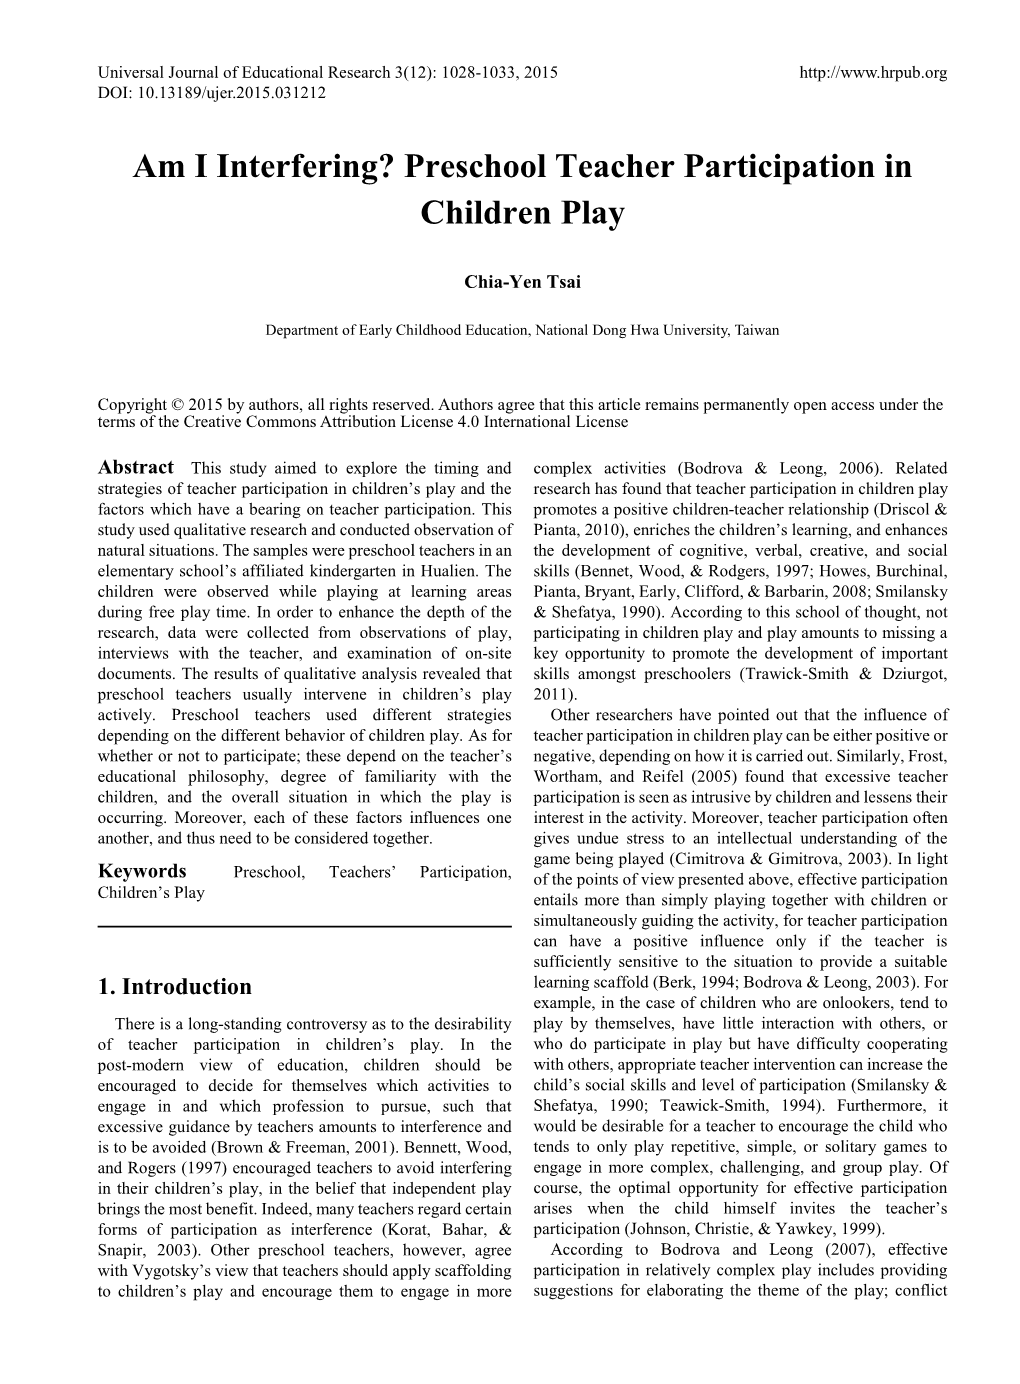 Preschool Teacher Participation in Children Play